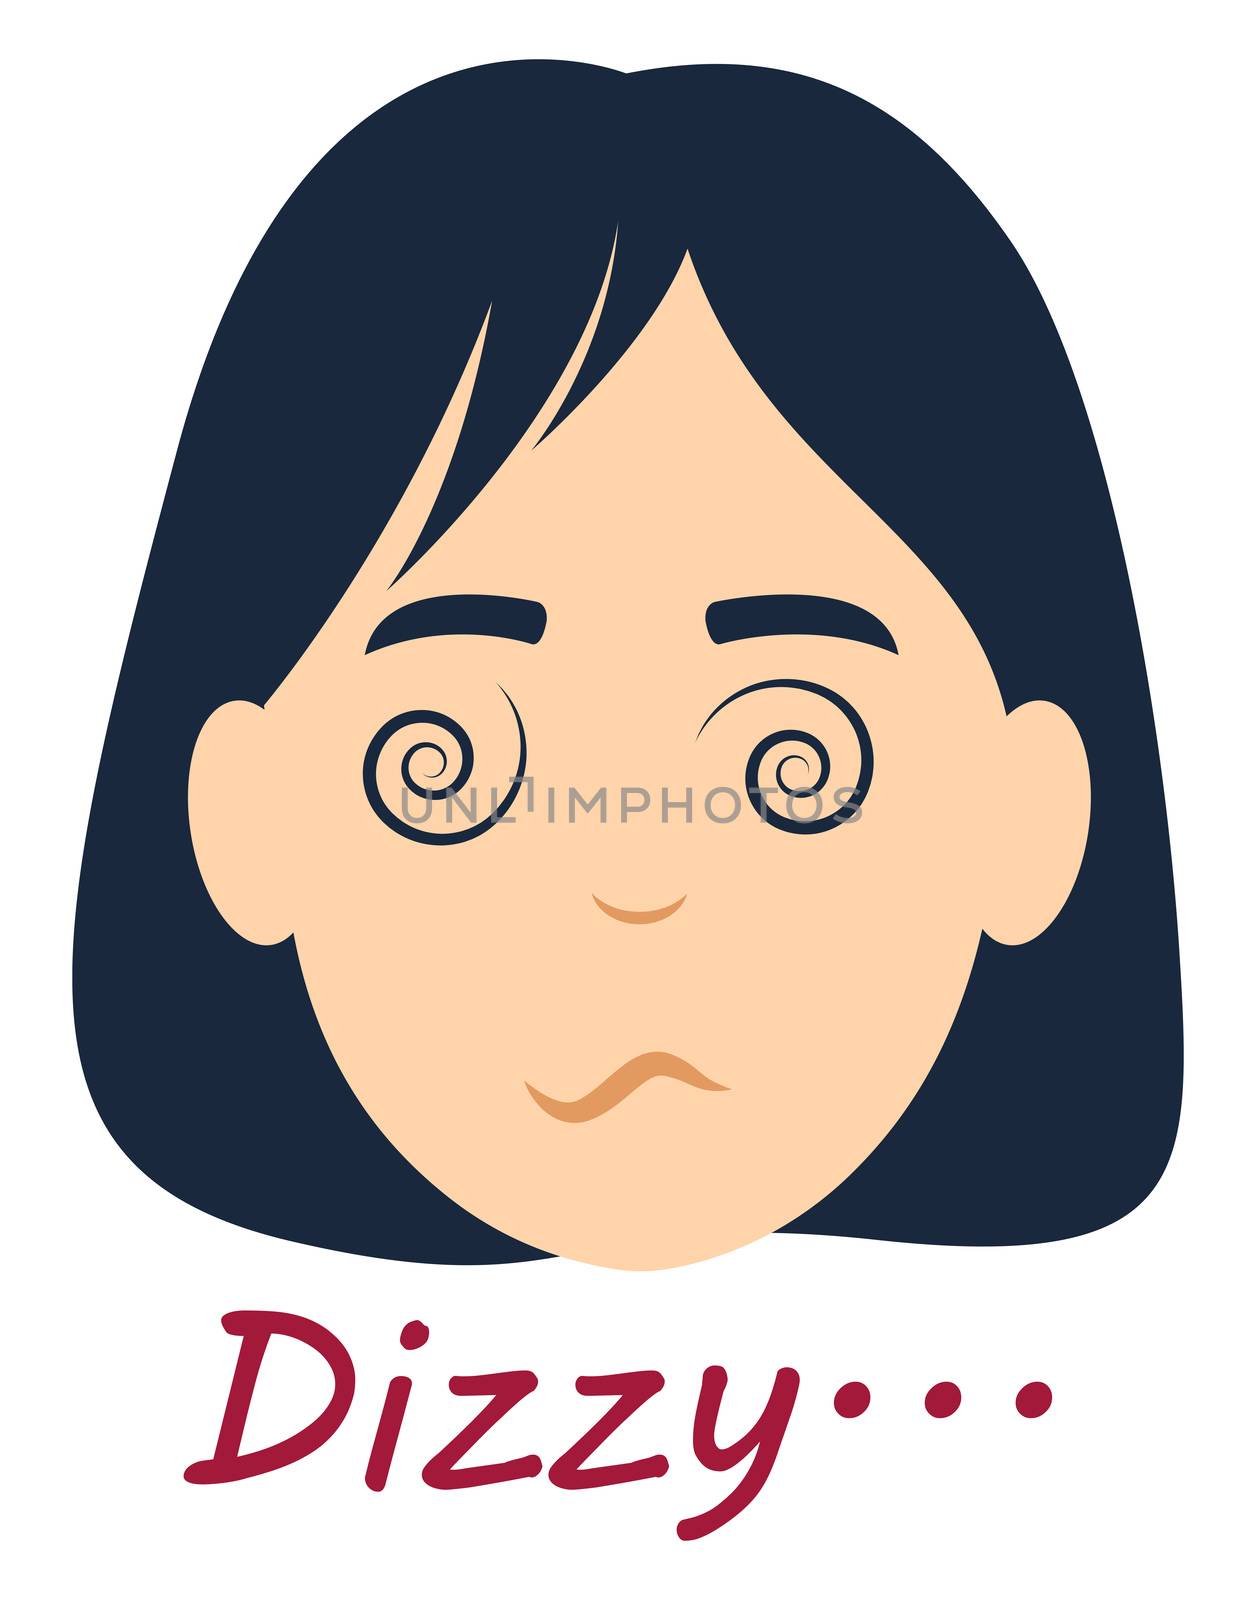 Dizzy girl, illustration, vector on white background